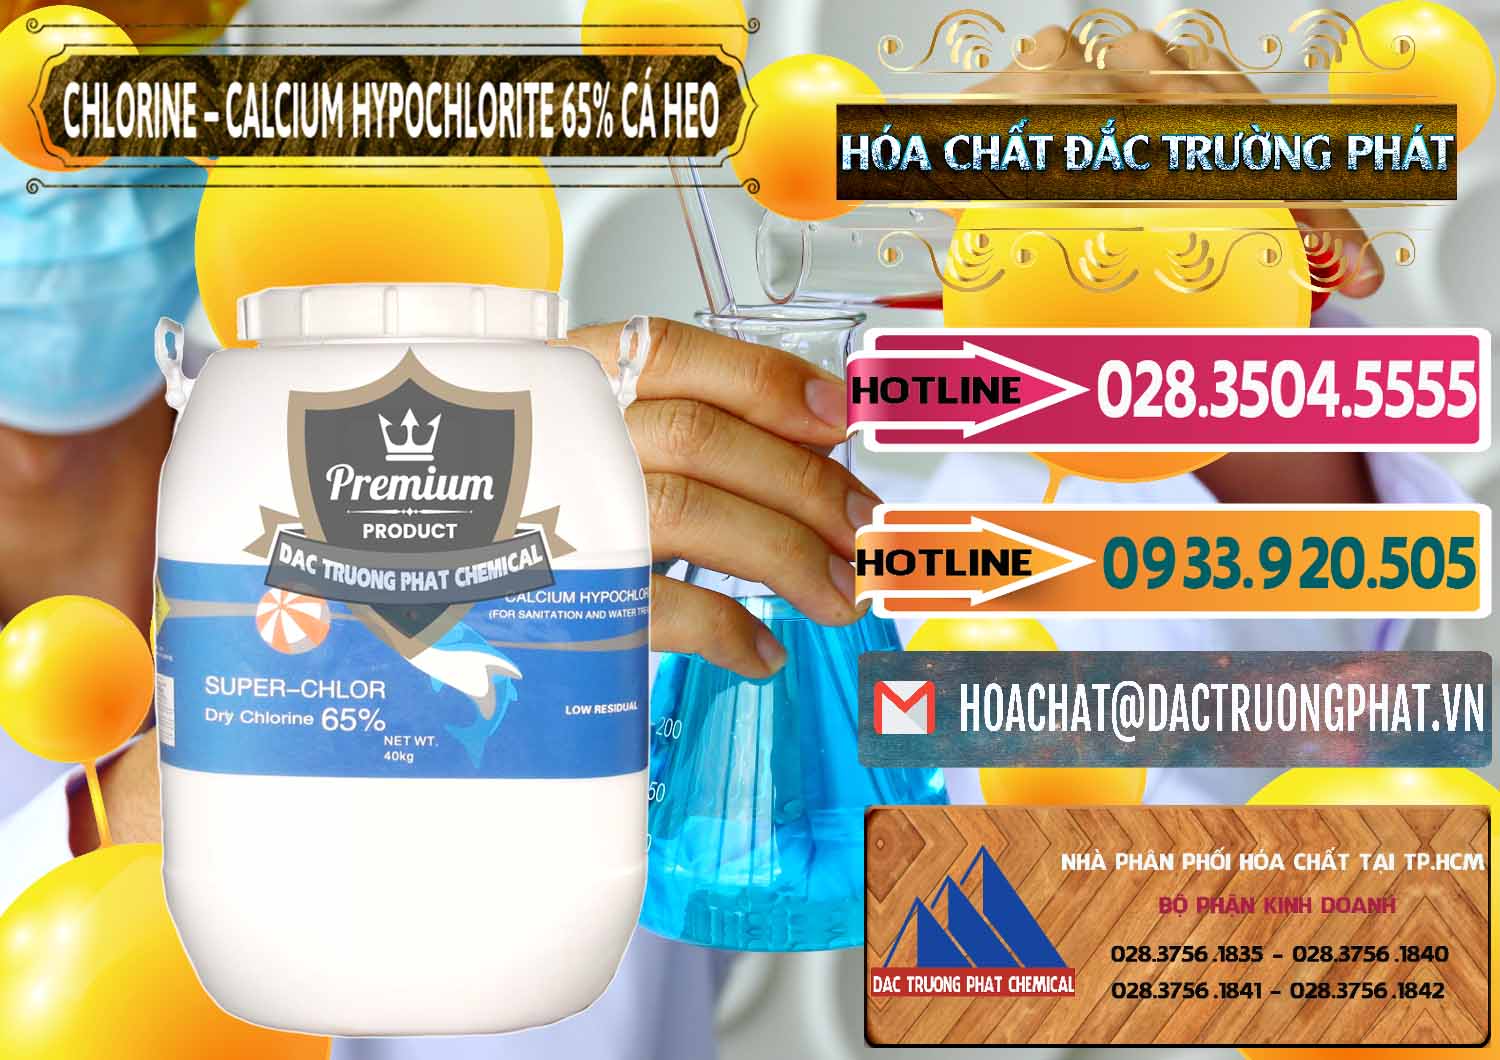 Cty chuyên kinh doanh & bán Clorin - Chlorine Cá Heo 65% Trung Quốc China - 0053 - Chuyên phân phối ( bán ) hóa chất tại TP.HCM - dactruongphat.vn